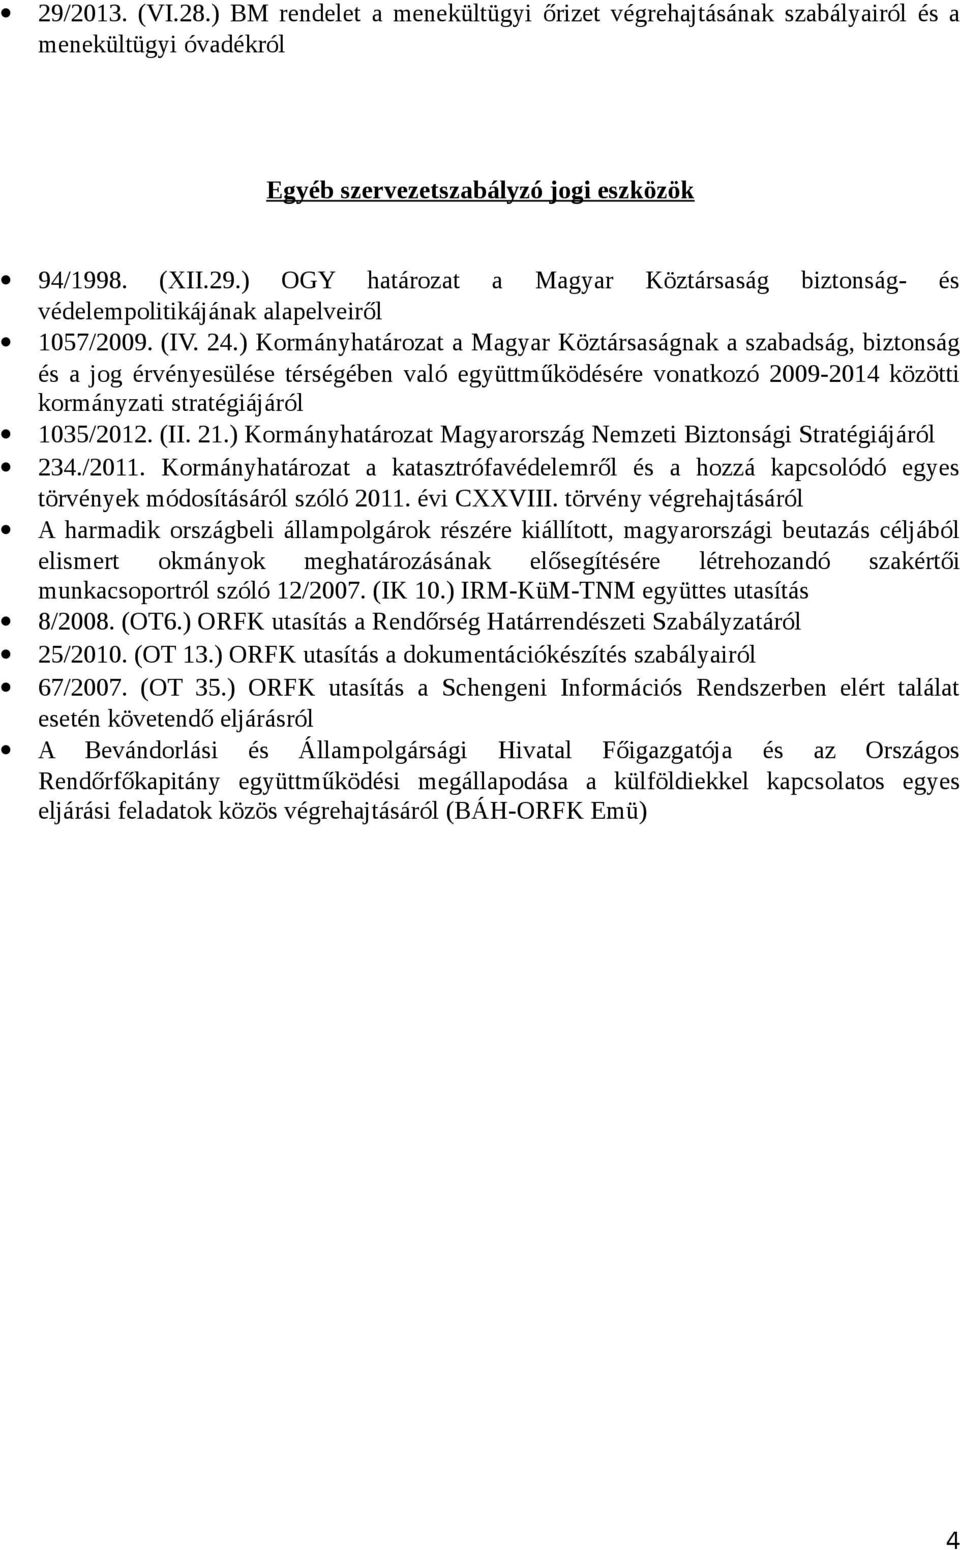 21.) Kormányhatározat Magyarország Nemzeti Biztonsági Stratégiájáról 234./2011. Kormányhatározat a katasztrófavédelemről és a hozzá kapcsolódó egyes törvények módosításáról szóló 2011. évi CXXVIII.